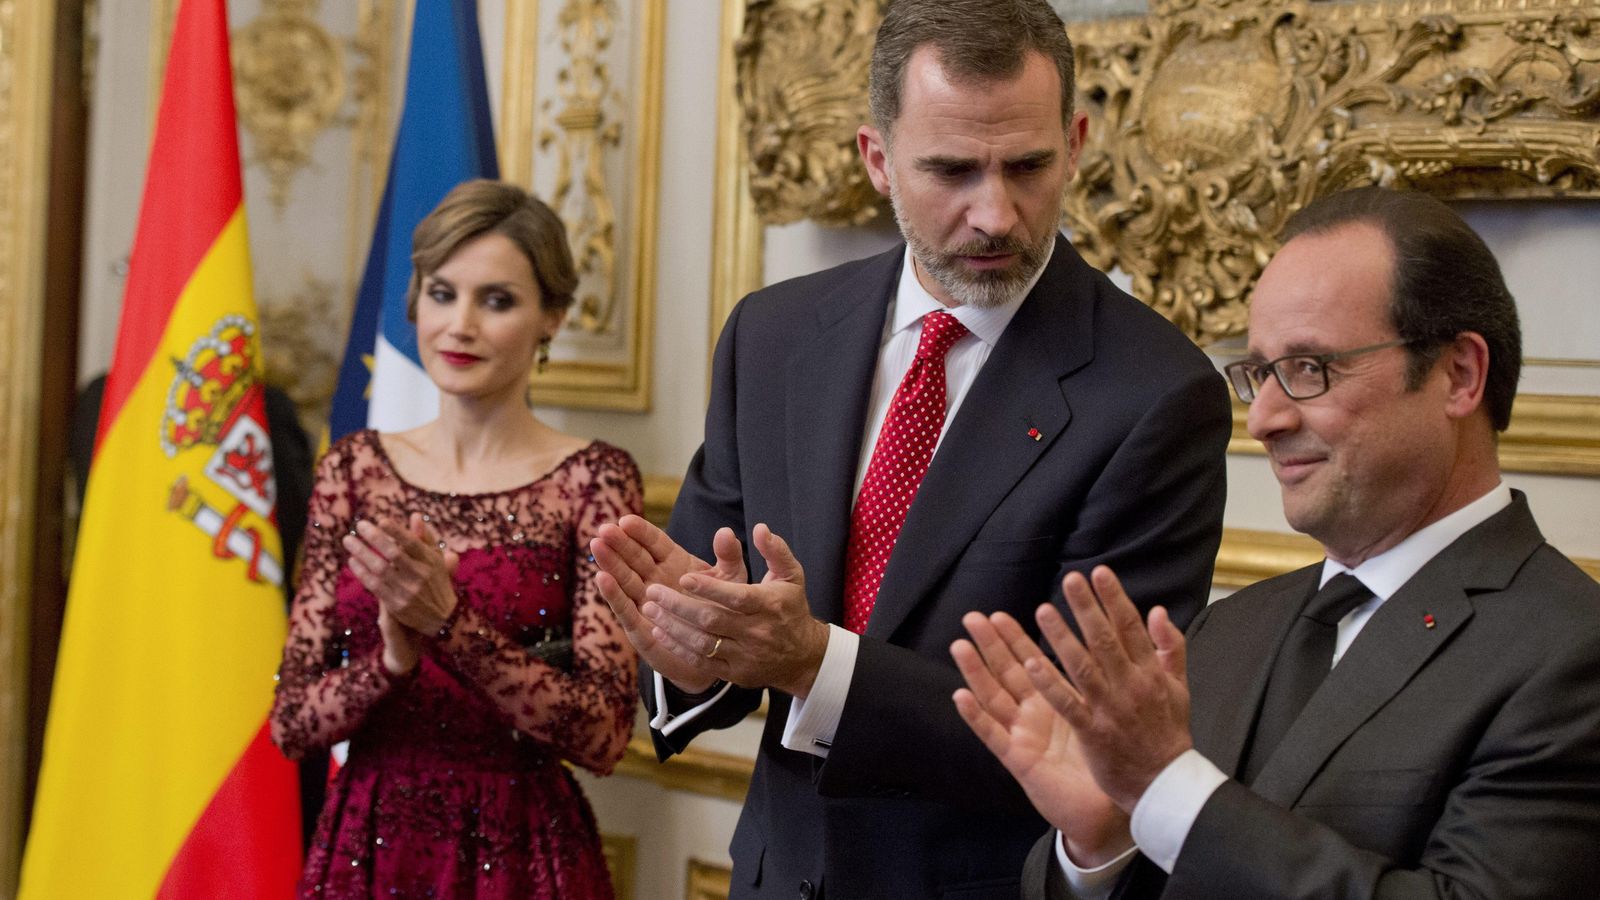 Foto: El Rey Felipe VI y Doña Letizia junto al presidente de la República Francesa, François Hollande (EFE)